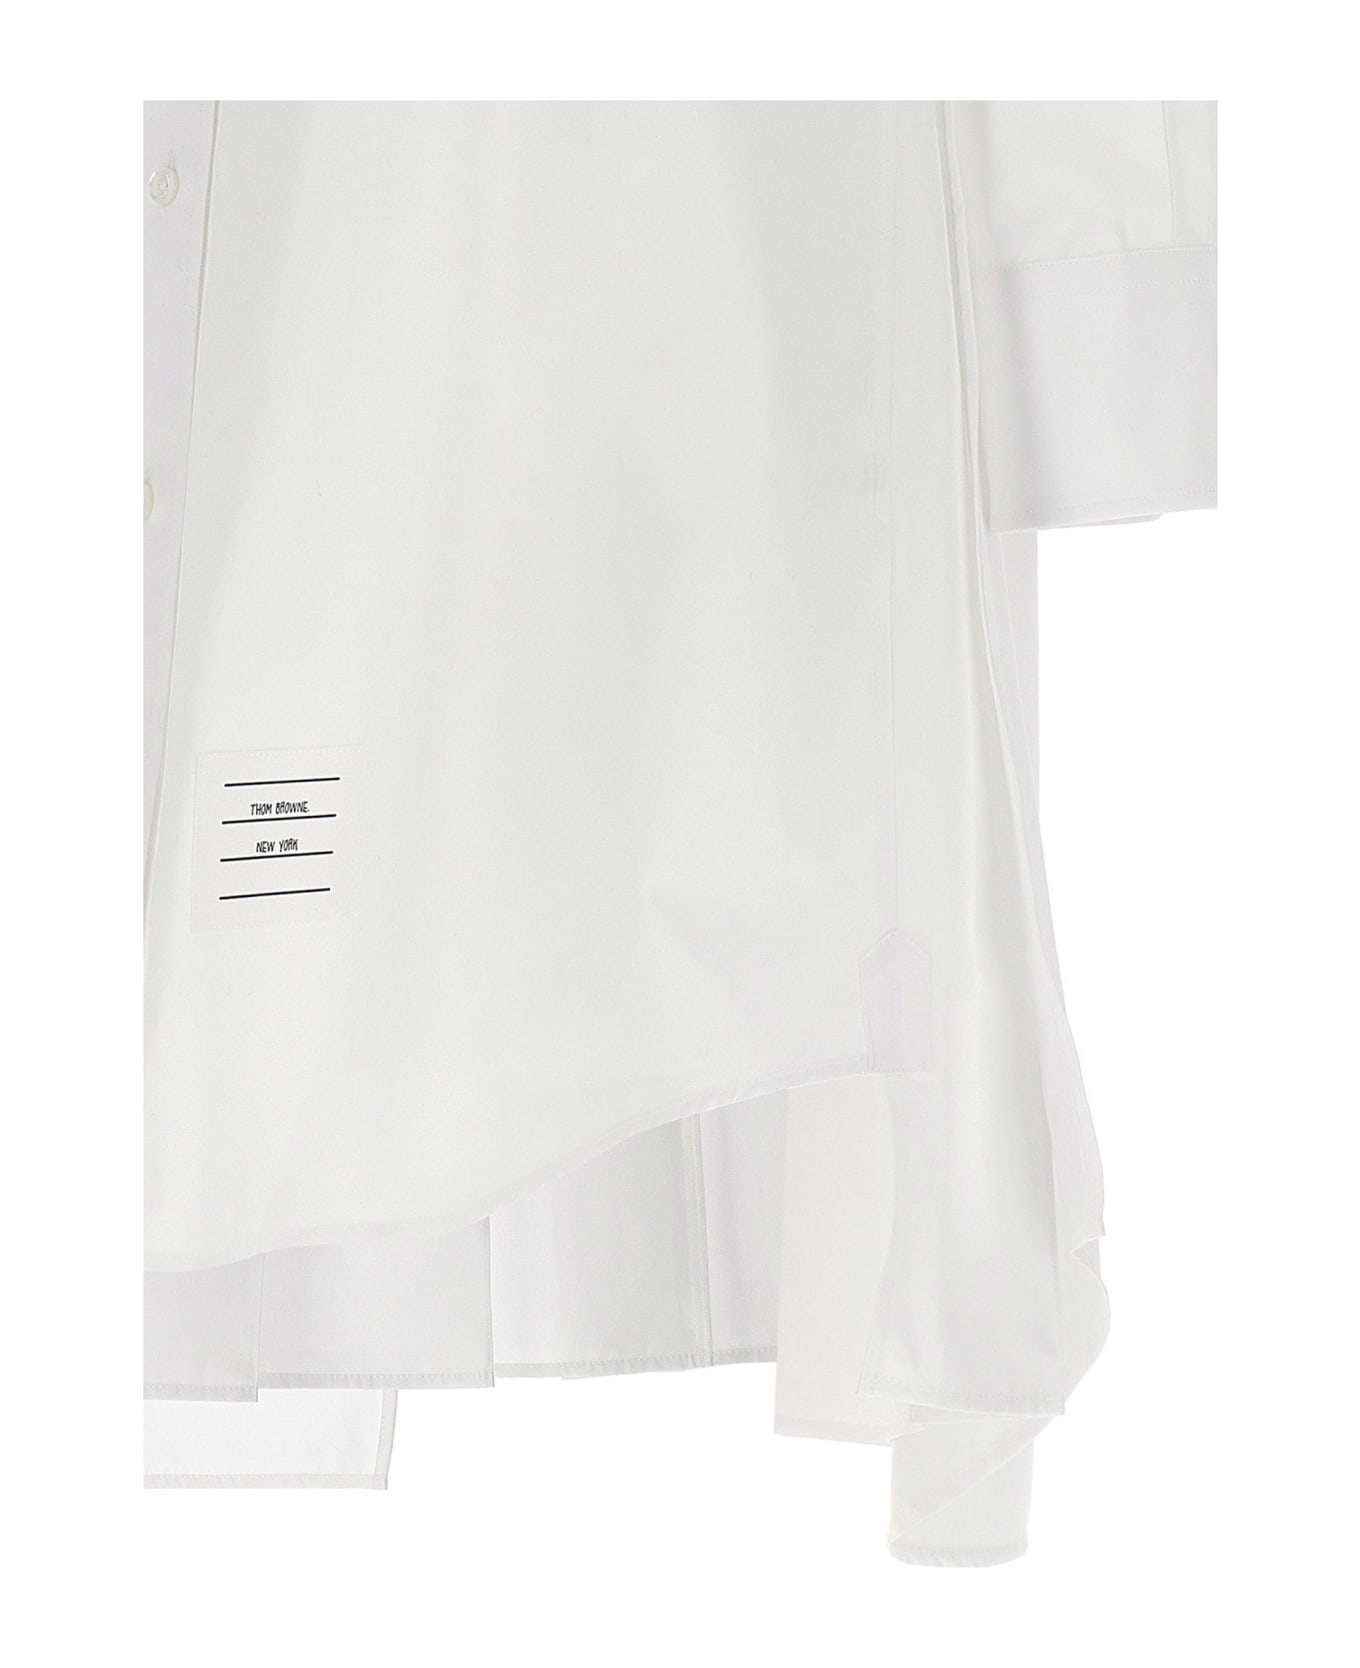 Thom Browne Shirt Dress - White